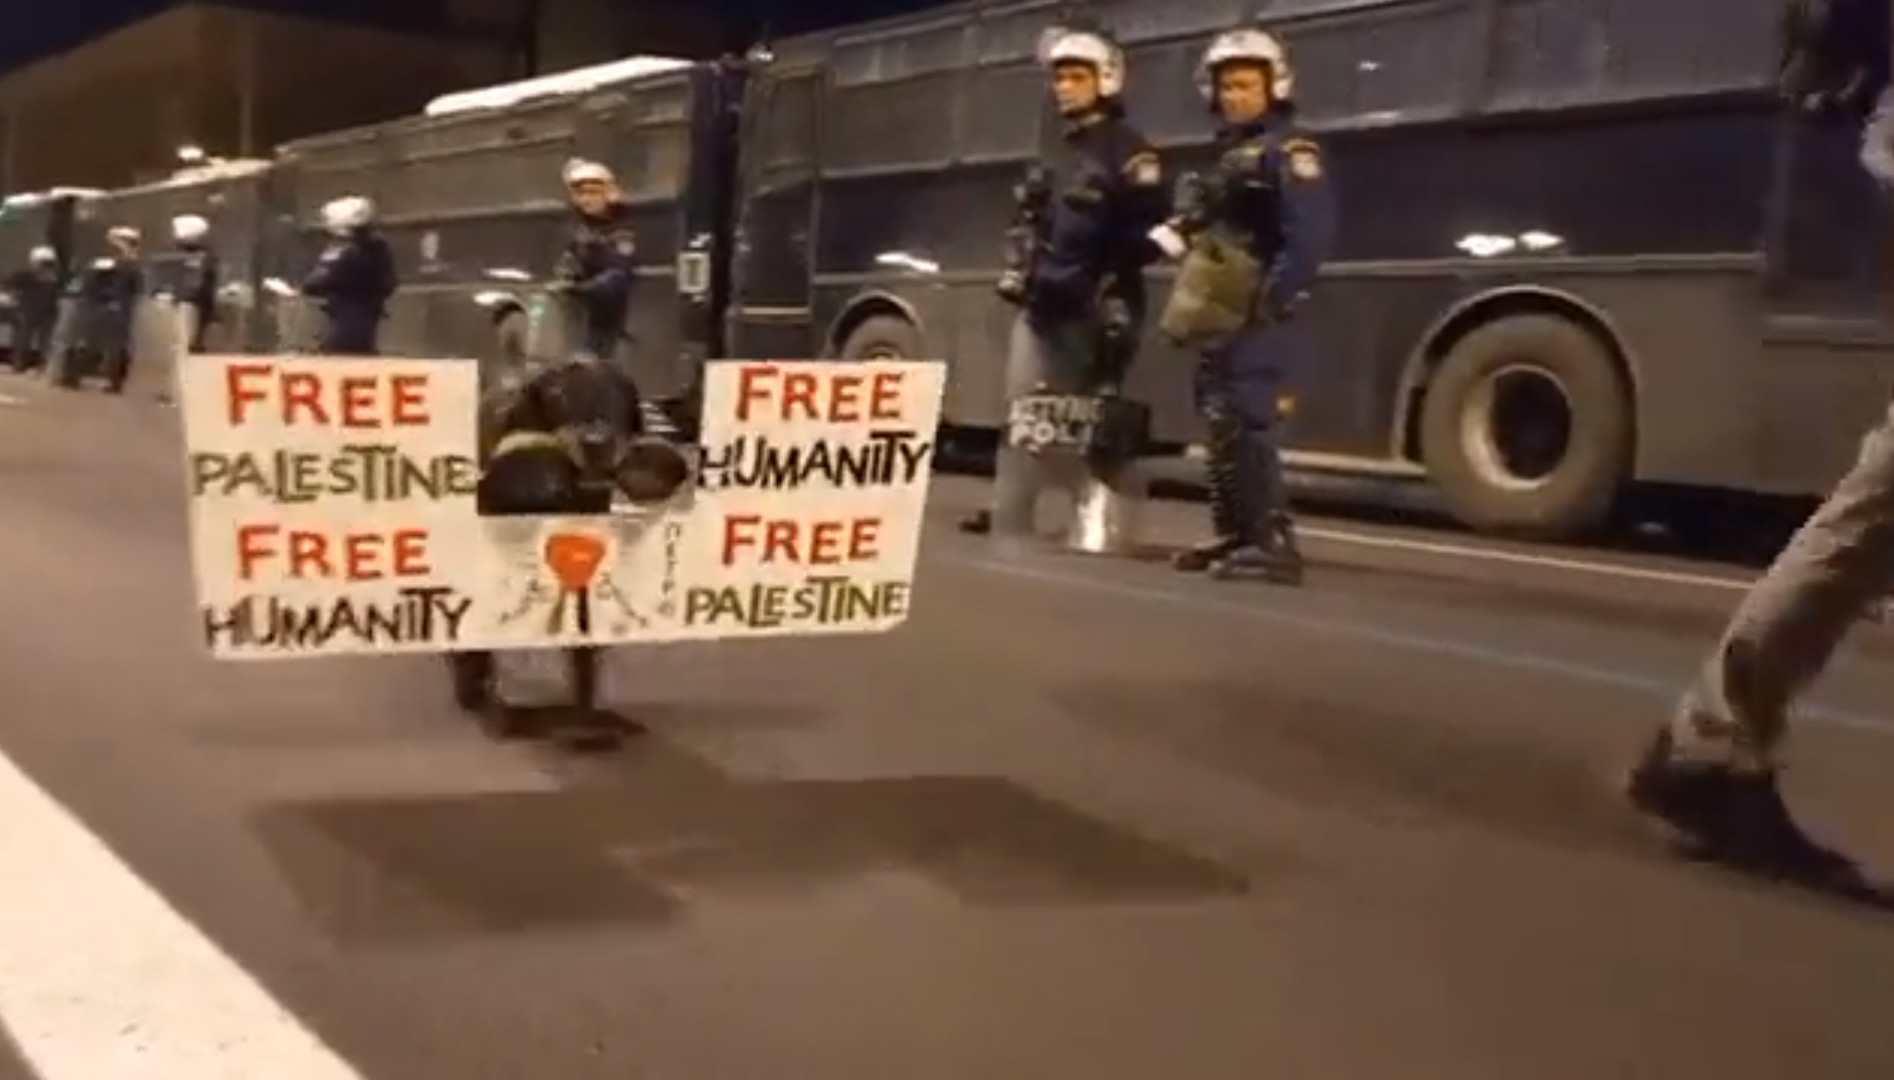 Πολυτεχνείο: Ο γνωστός σκύλος - διαδηλωτής στην Αθήνα συμμετείχε στην πορεία με μήνυμα για την Παλαιστίνη